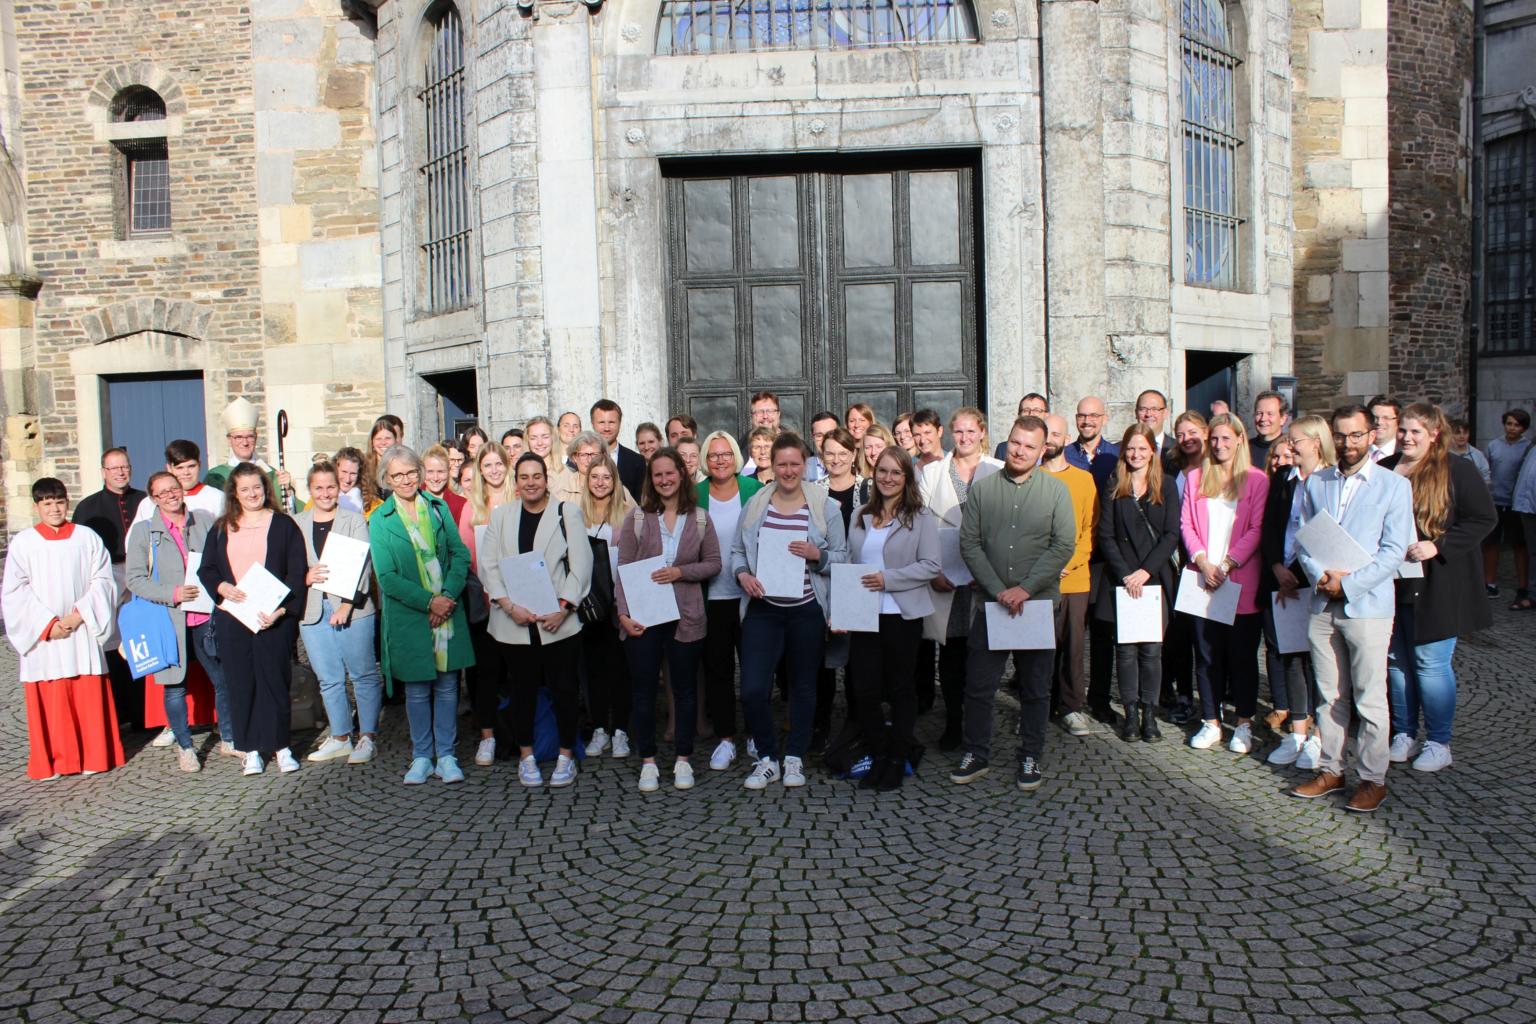 30 Religionslehrerinnen und -lehrer erhalten ihre kirchliche Beauftragung (c) Bistum Aachen/Anja Klingbeil